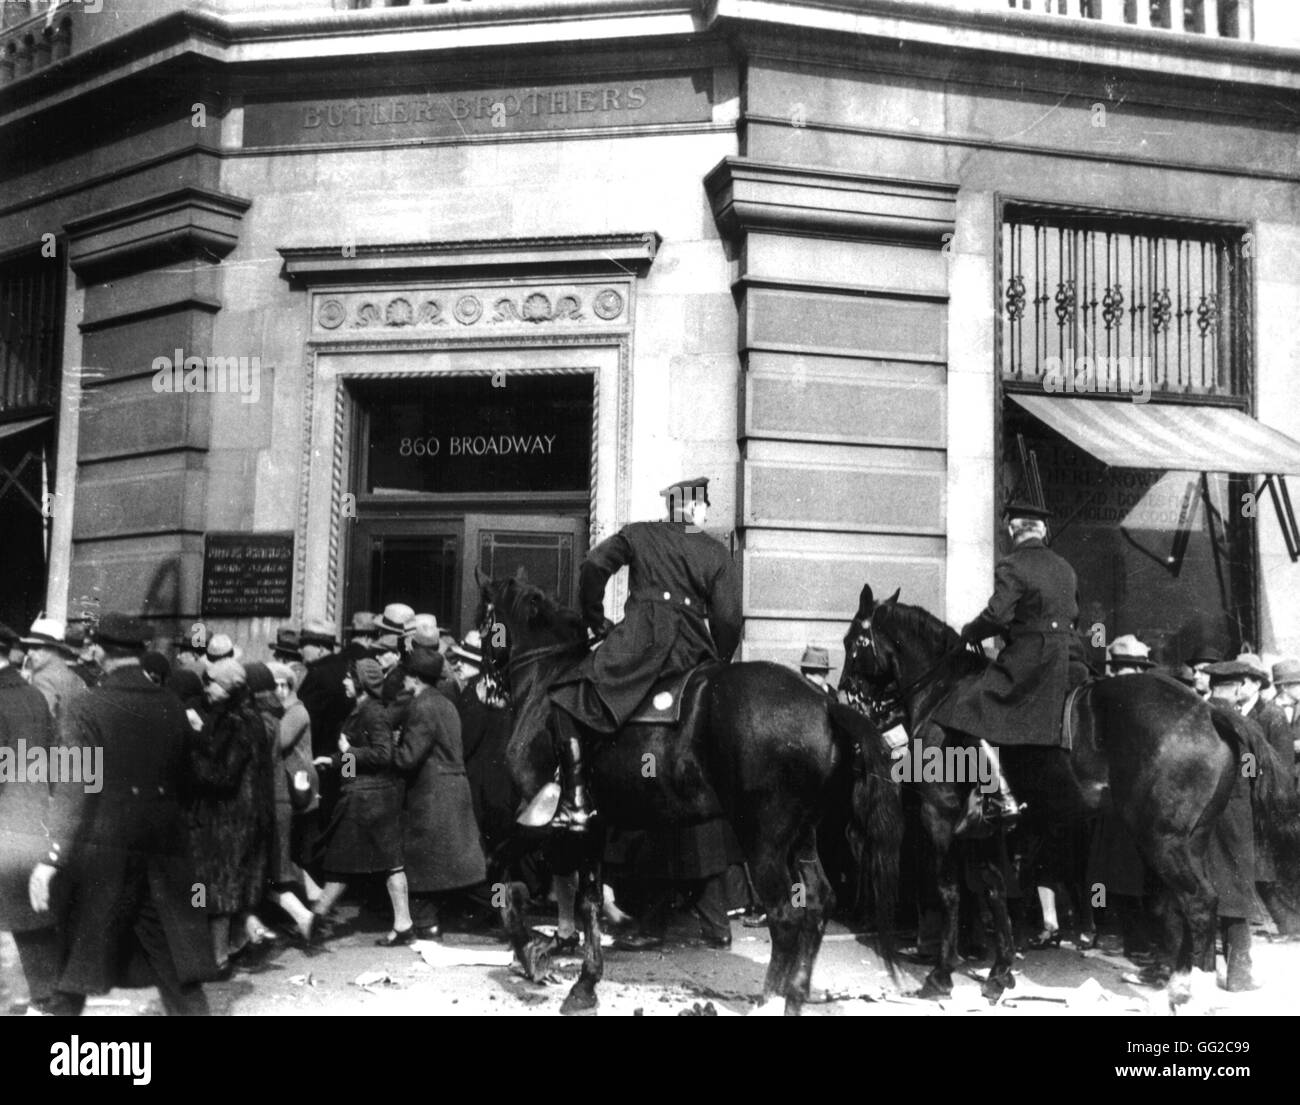 New York. Le Canada se disperser une manifestation de chômeurs à Union Square. 6 mars 1930 United States Washington. Bibliothèque du Congrès Banque D'Images